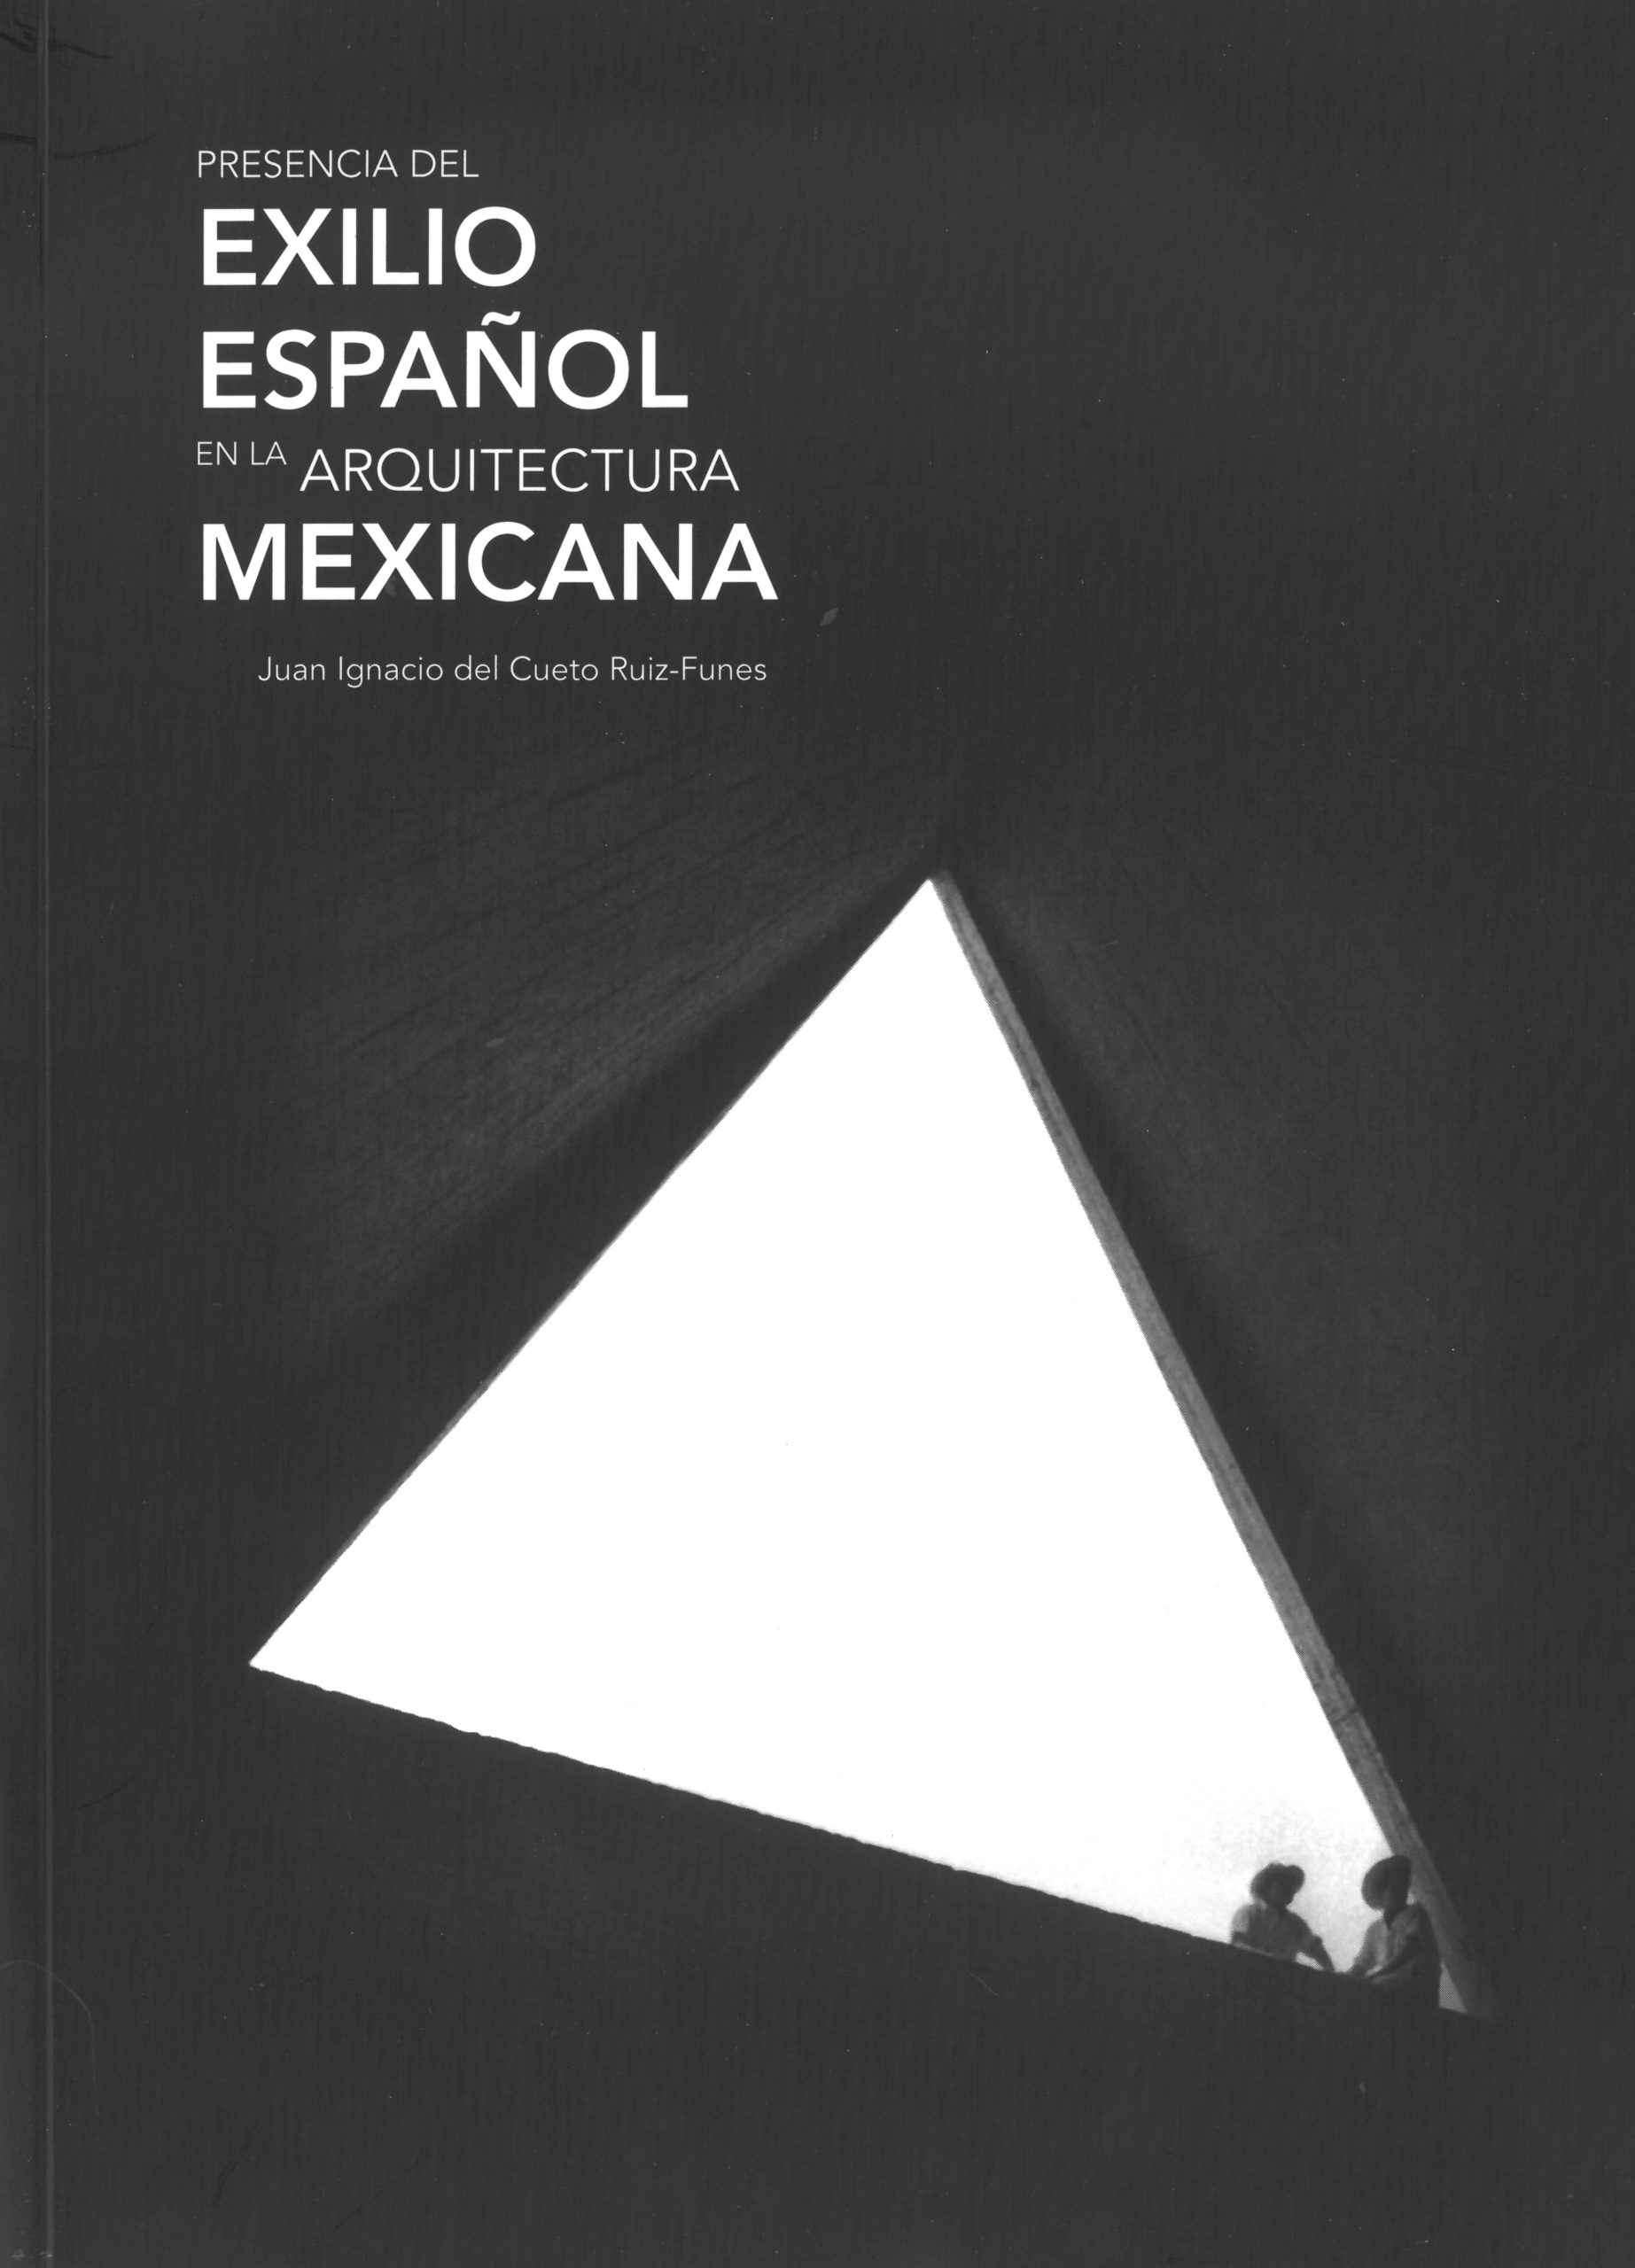 Presencia del exilio español en la arquitectura mexicana Image